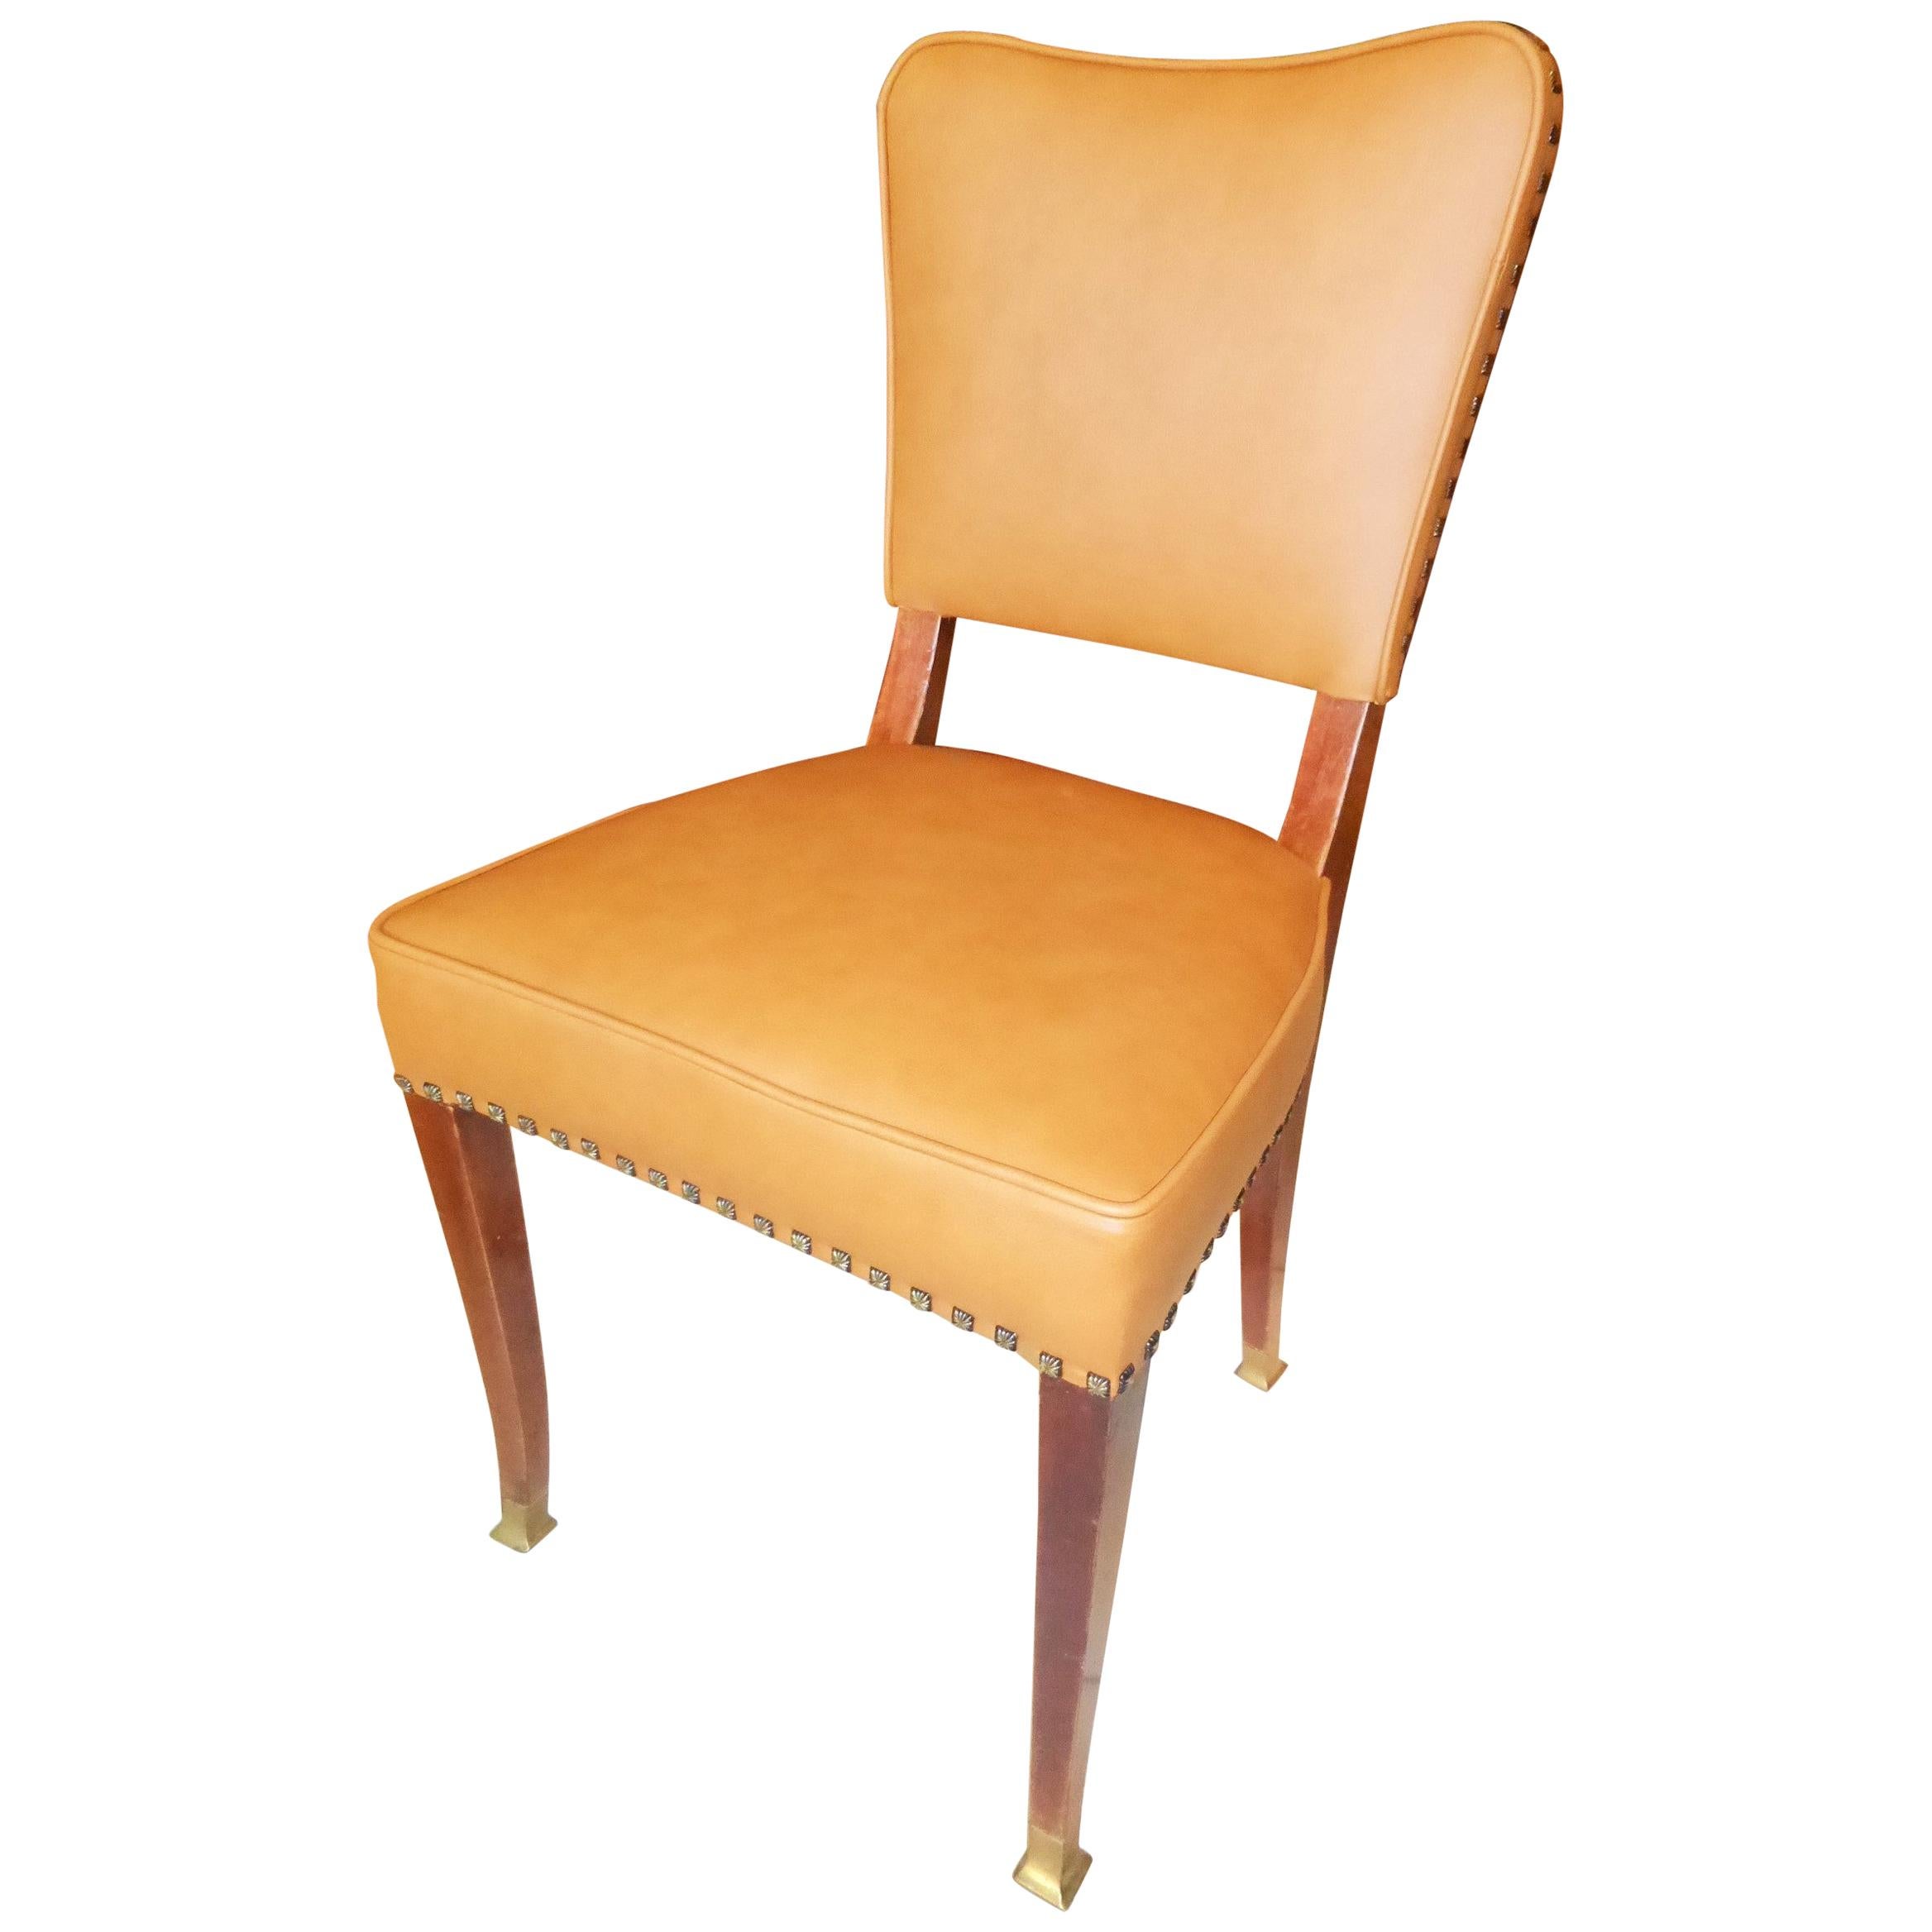 Friedrich Otto Schmidt Jugendstil Chairs Based on a Adolf Loos Design For Sale